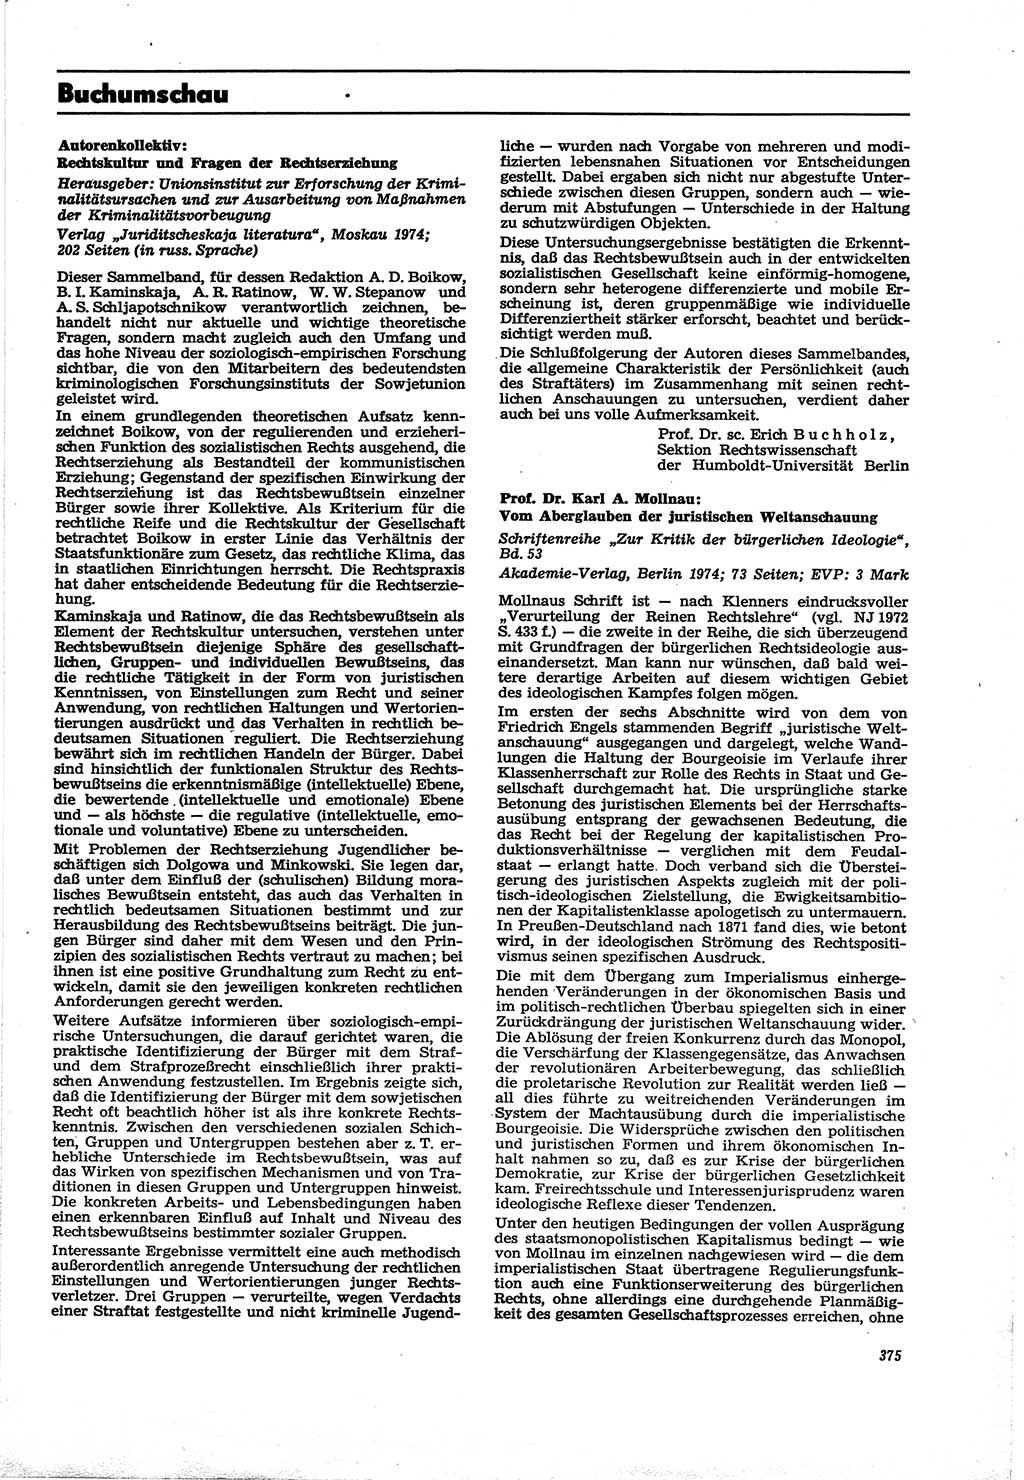 Neue Justiz (NJ), Zeitschrift für Recht und Rechtswissenschaft [Deutsche Demokratische Republik (DDR)], 30. Jahrgang 1976, Seite 375 (NJ DDR 1976, S. 375)